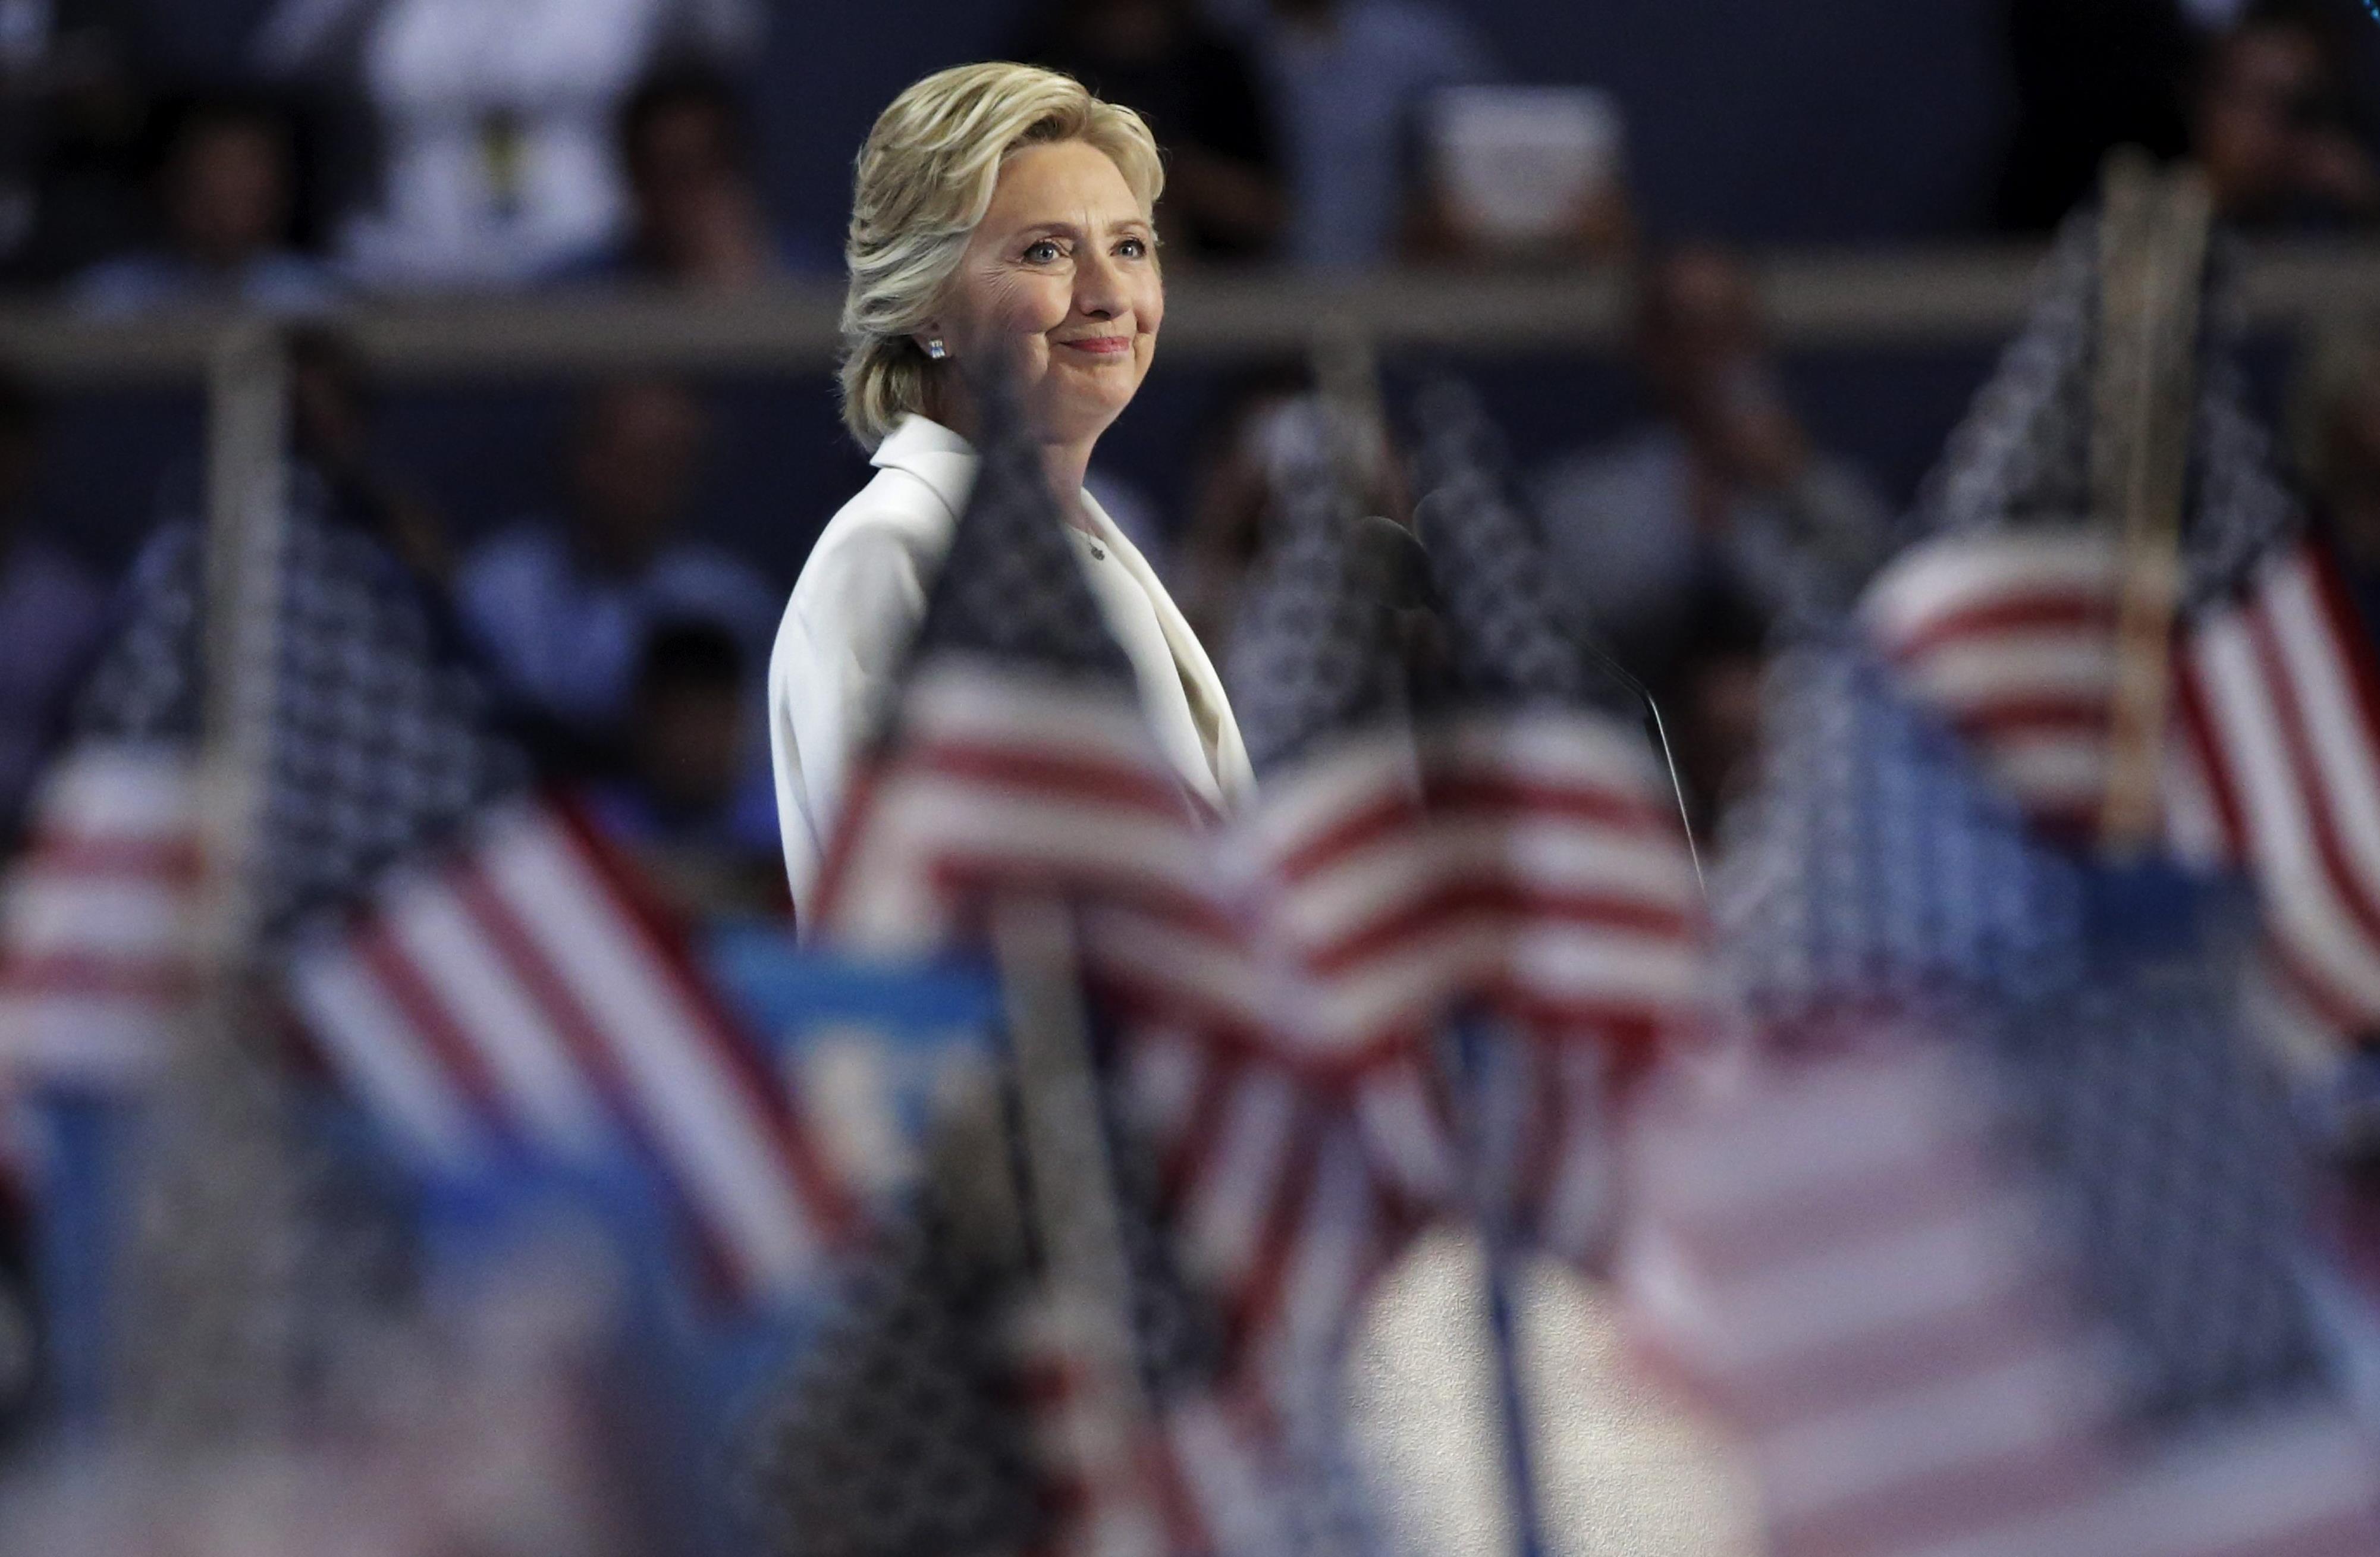 Χίλαρι Κλίντον: Χρειαζόμαστε σταθερή ηγεσία και συλλογικό πνεύμα